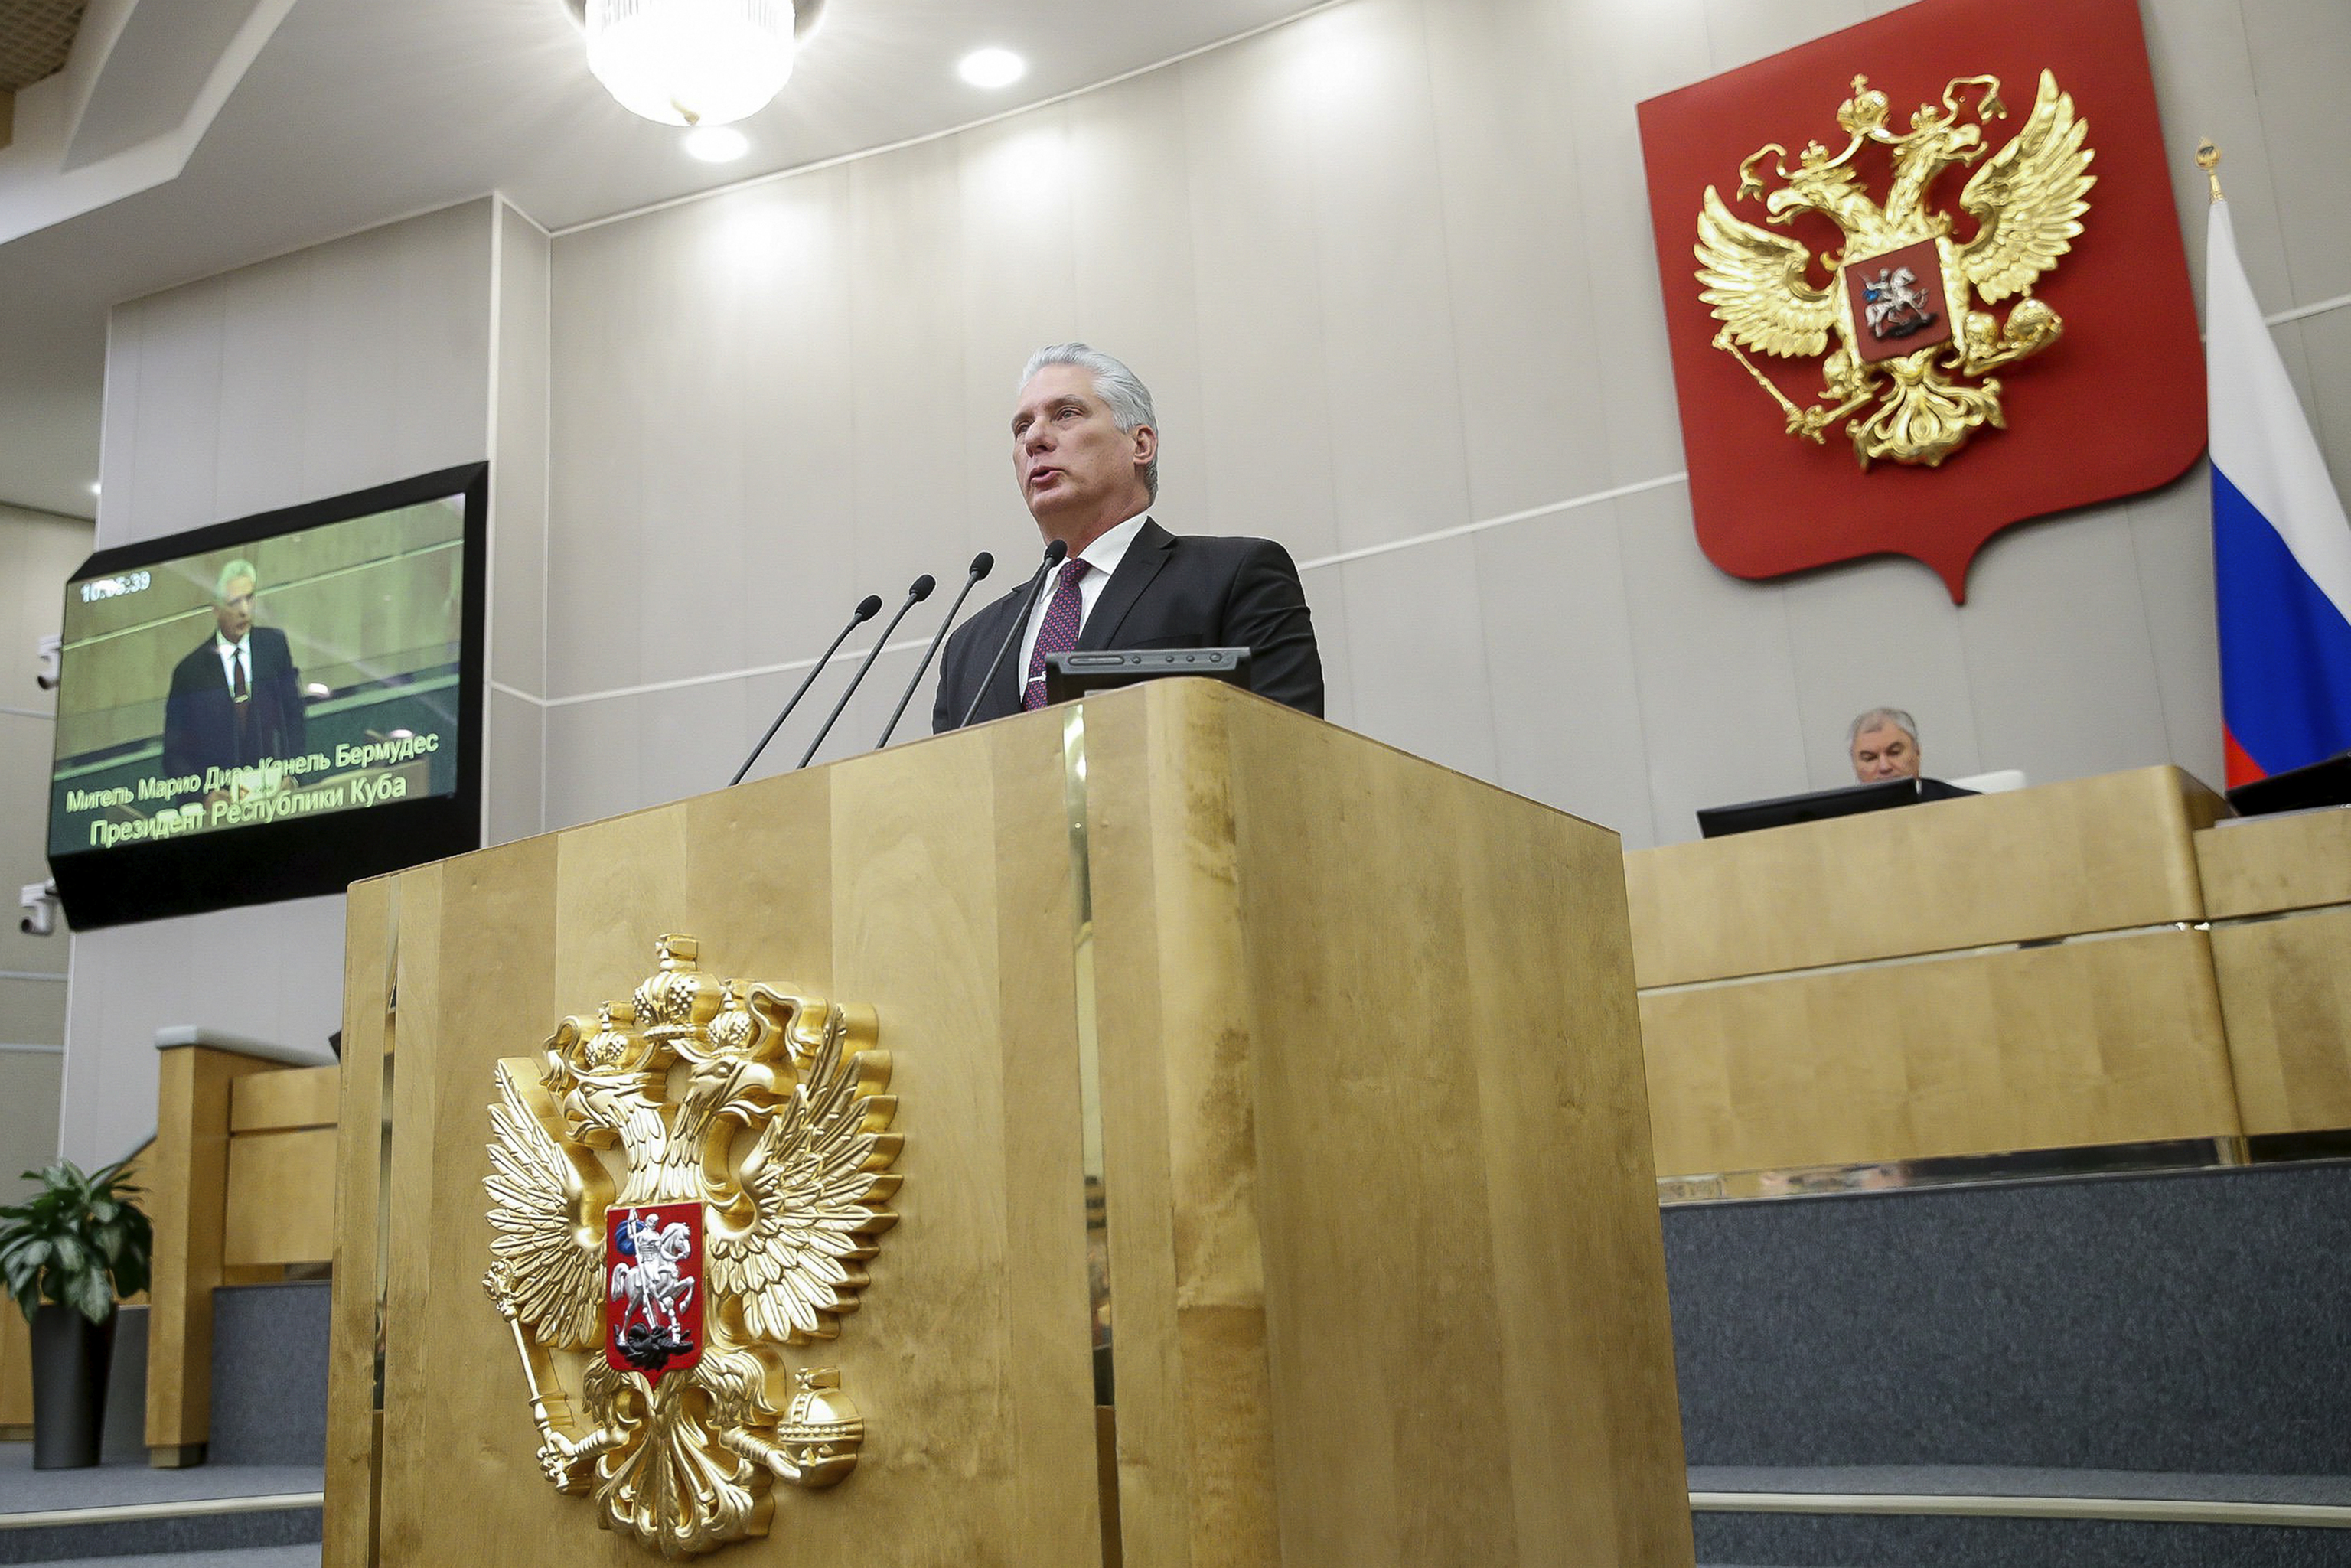 Díaz-Canel interviene en la Duma Estatal, la Cámara Baja del Parlamento ruso.